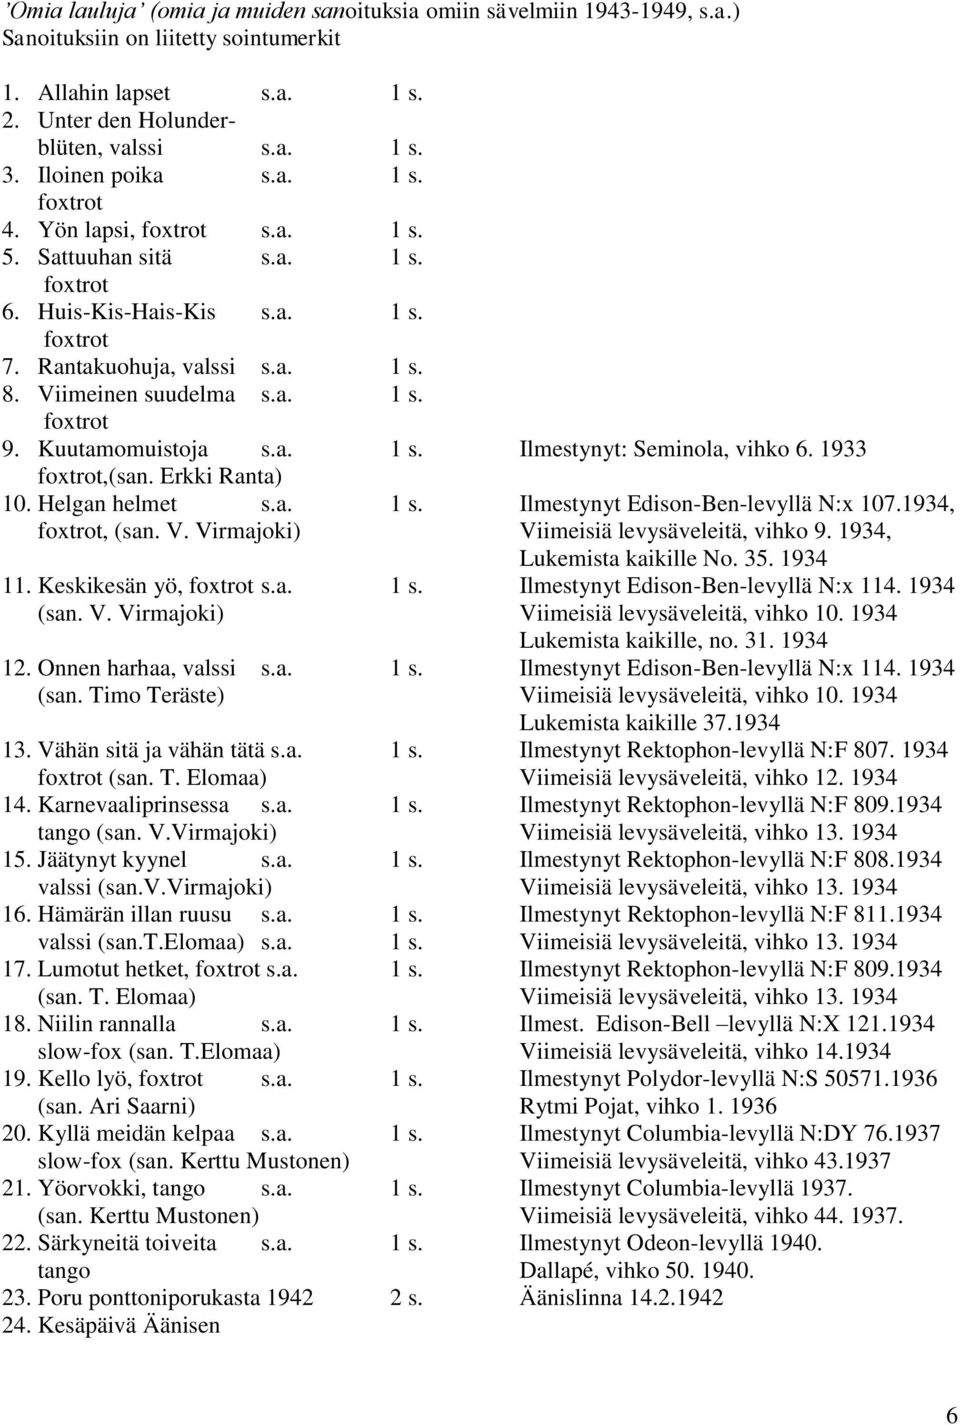 1933,(san. Erkki Ranta) 10. Helgan helmet s.a. 1 s. Ilmestynyt Edison-Ben-levyllä N:x 107.1934,, (san. V. Virmajoki) Viimeisiä levysäveleitä, vihko 9. 1934, Lukemista kaikille No. 35. 1934 11.